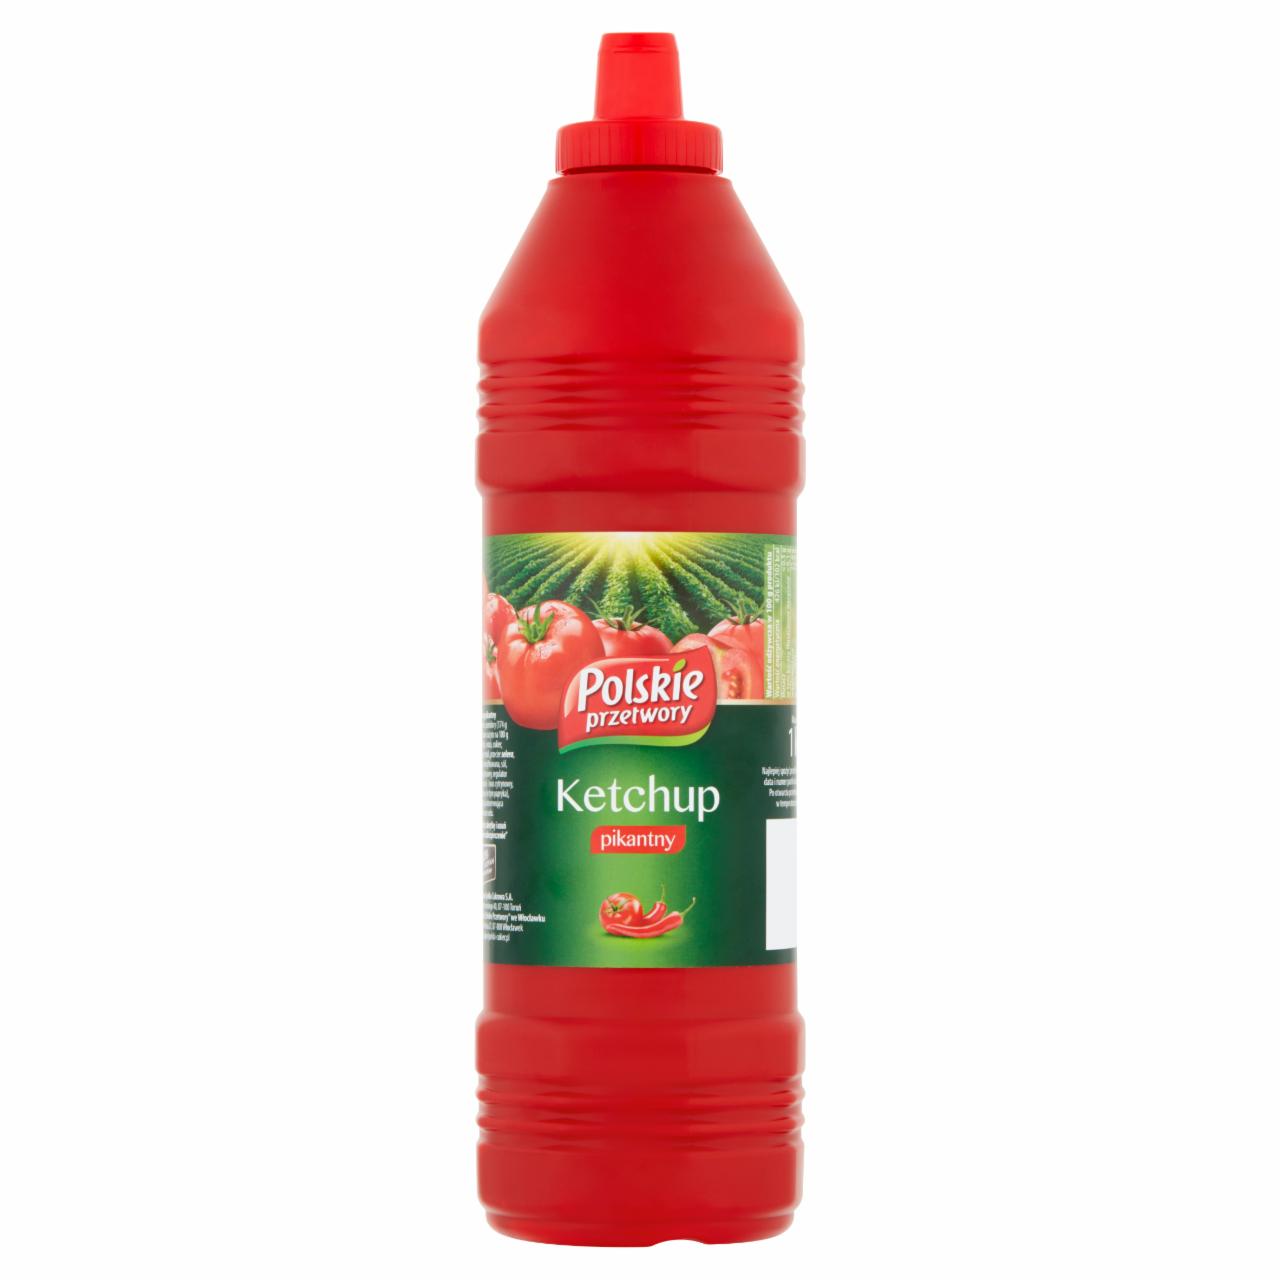 Zdjęcia - Polskie przetwory Ketchup pikantny 1 kg